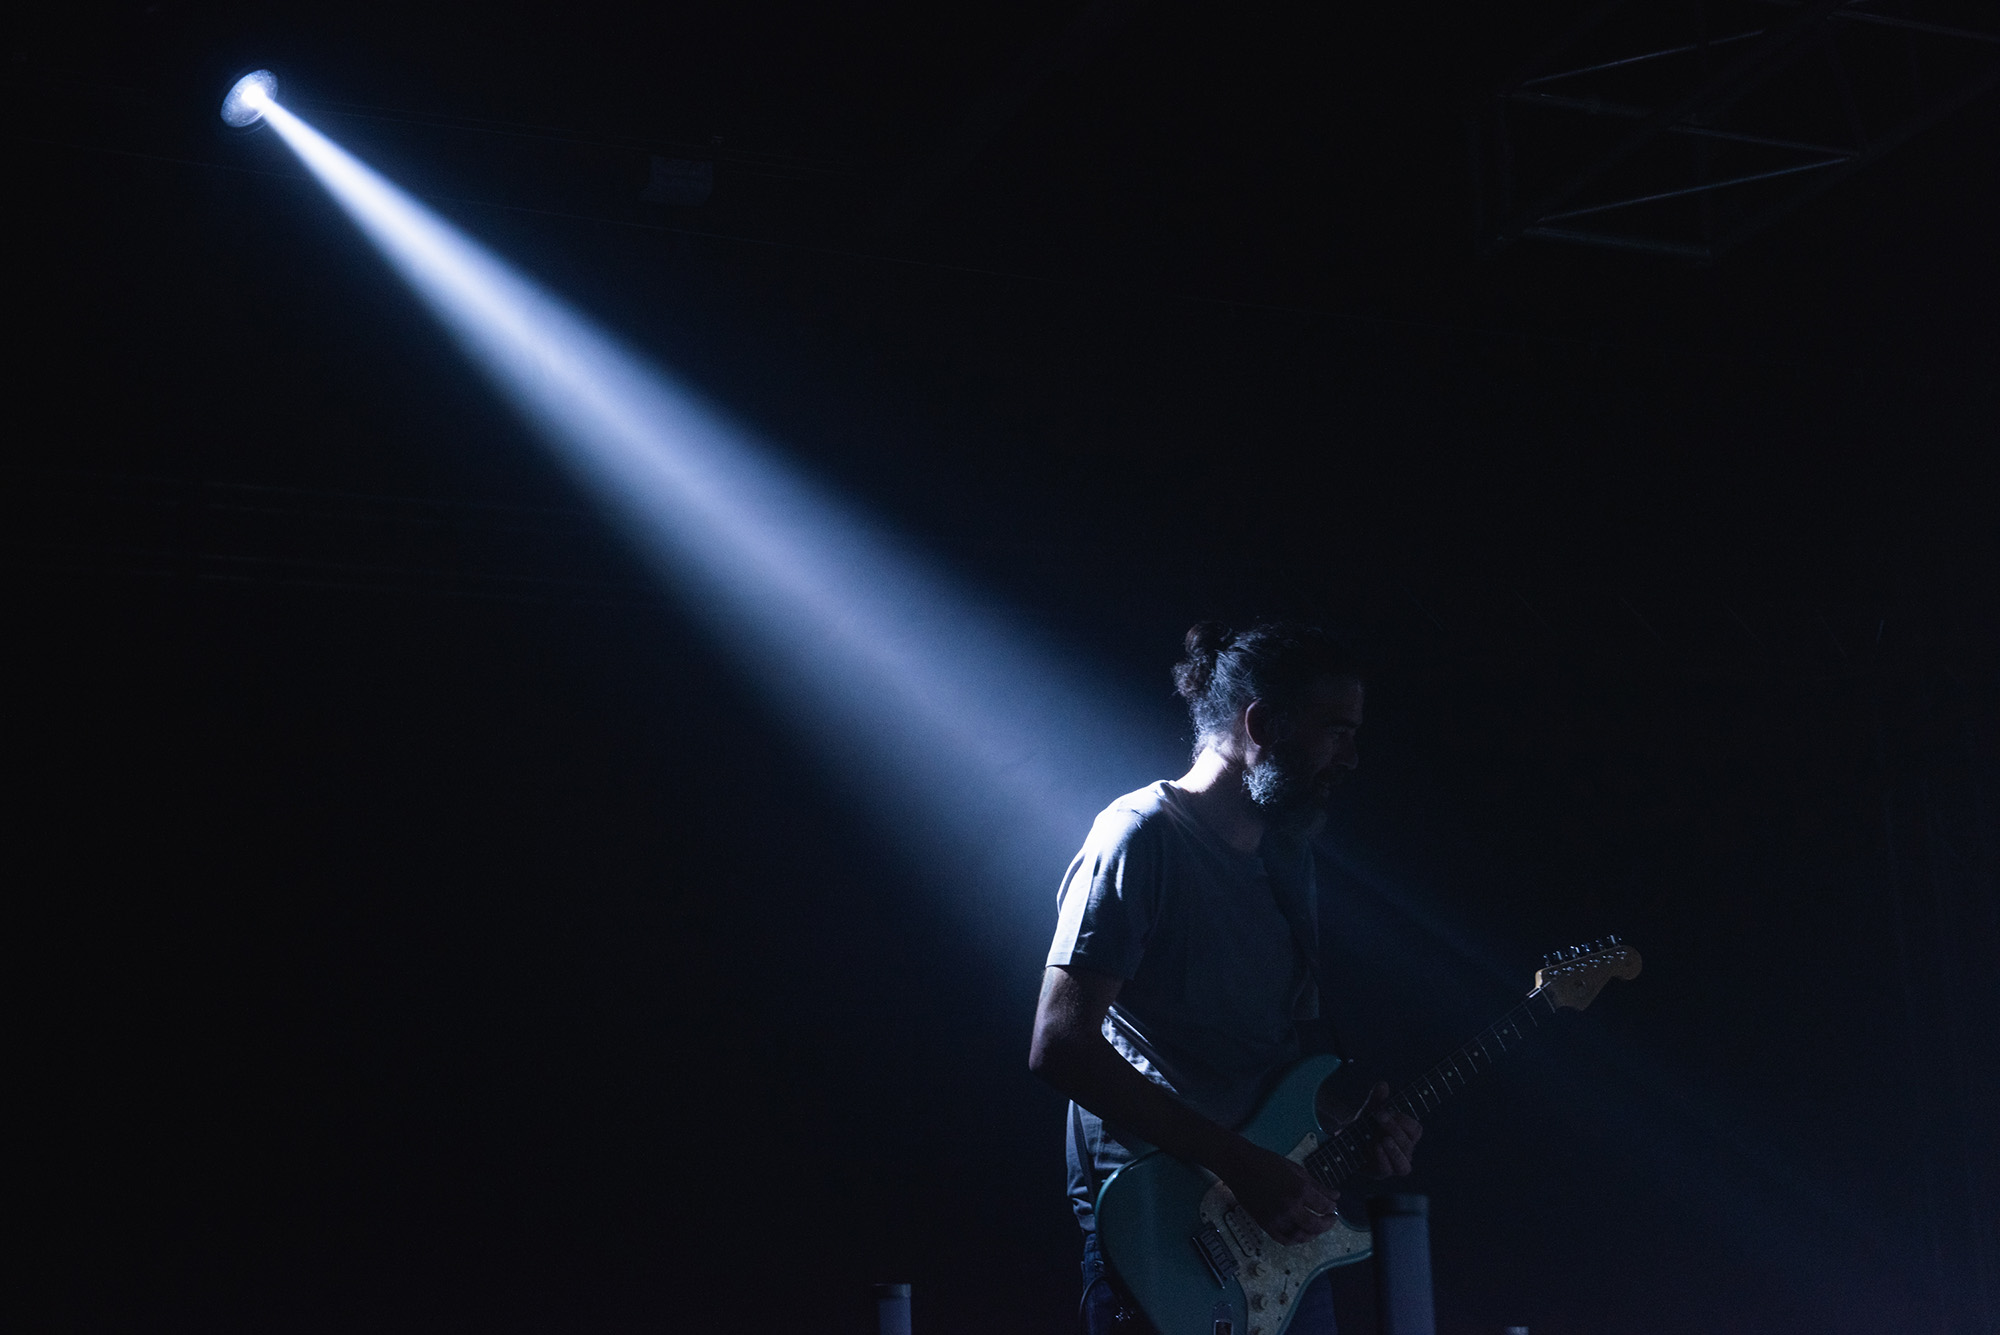 Guitarrista tocando a oscuras con un foco de luz sobre él